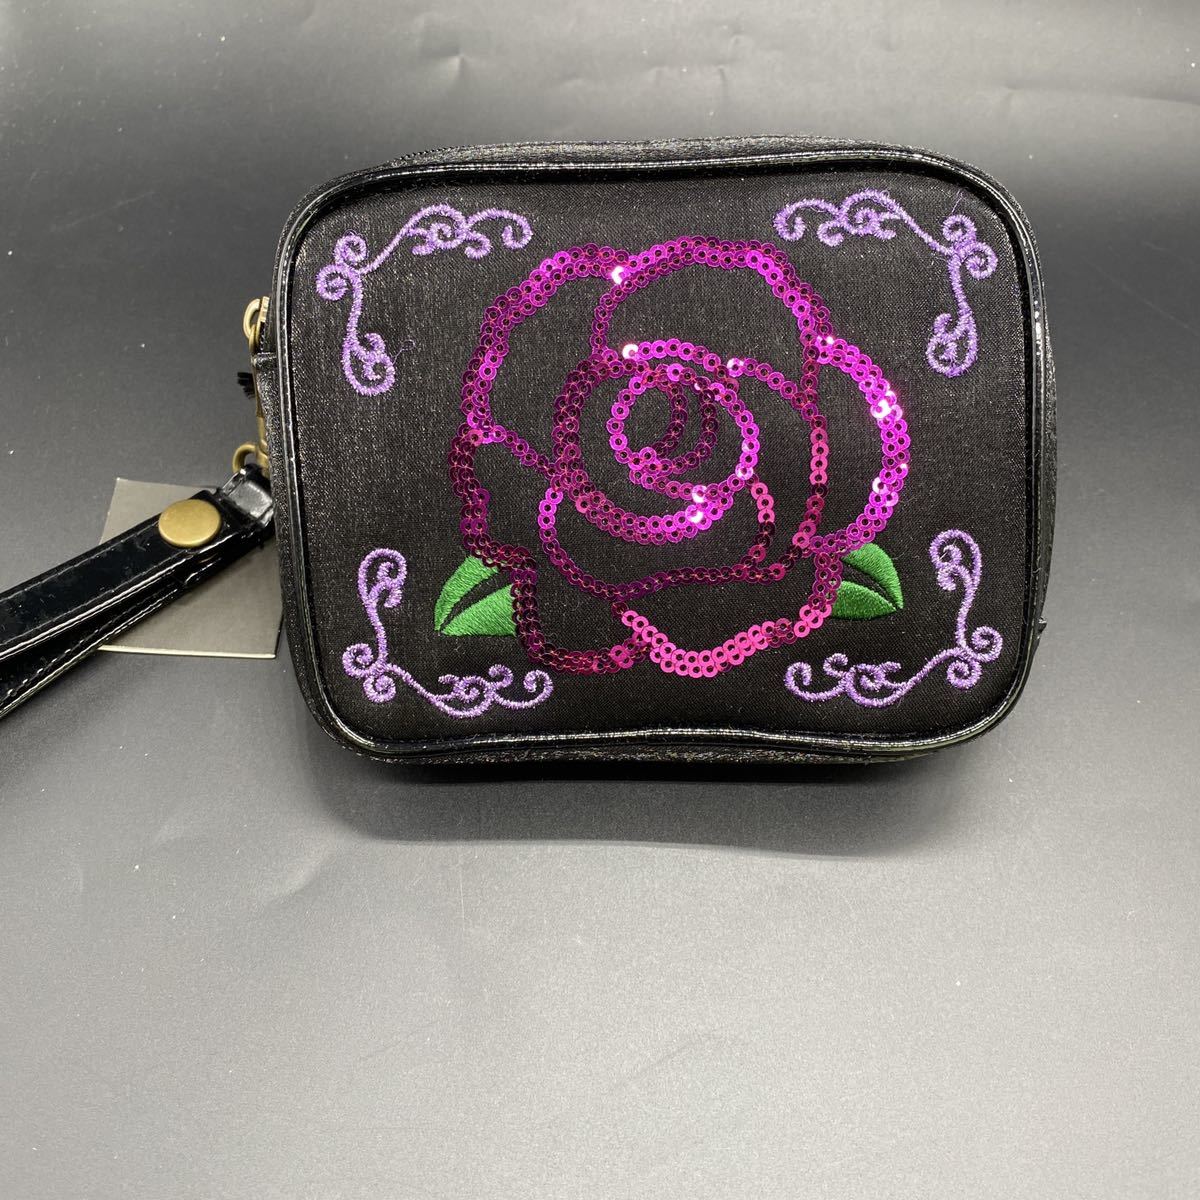 ANNA SUI Anna Sui eko-bag black rose pouch entering tag attaching 